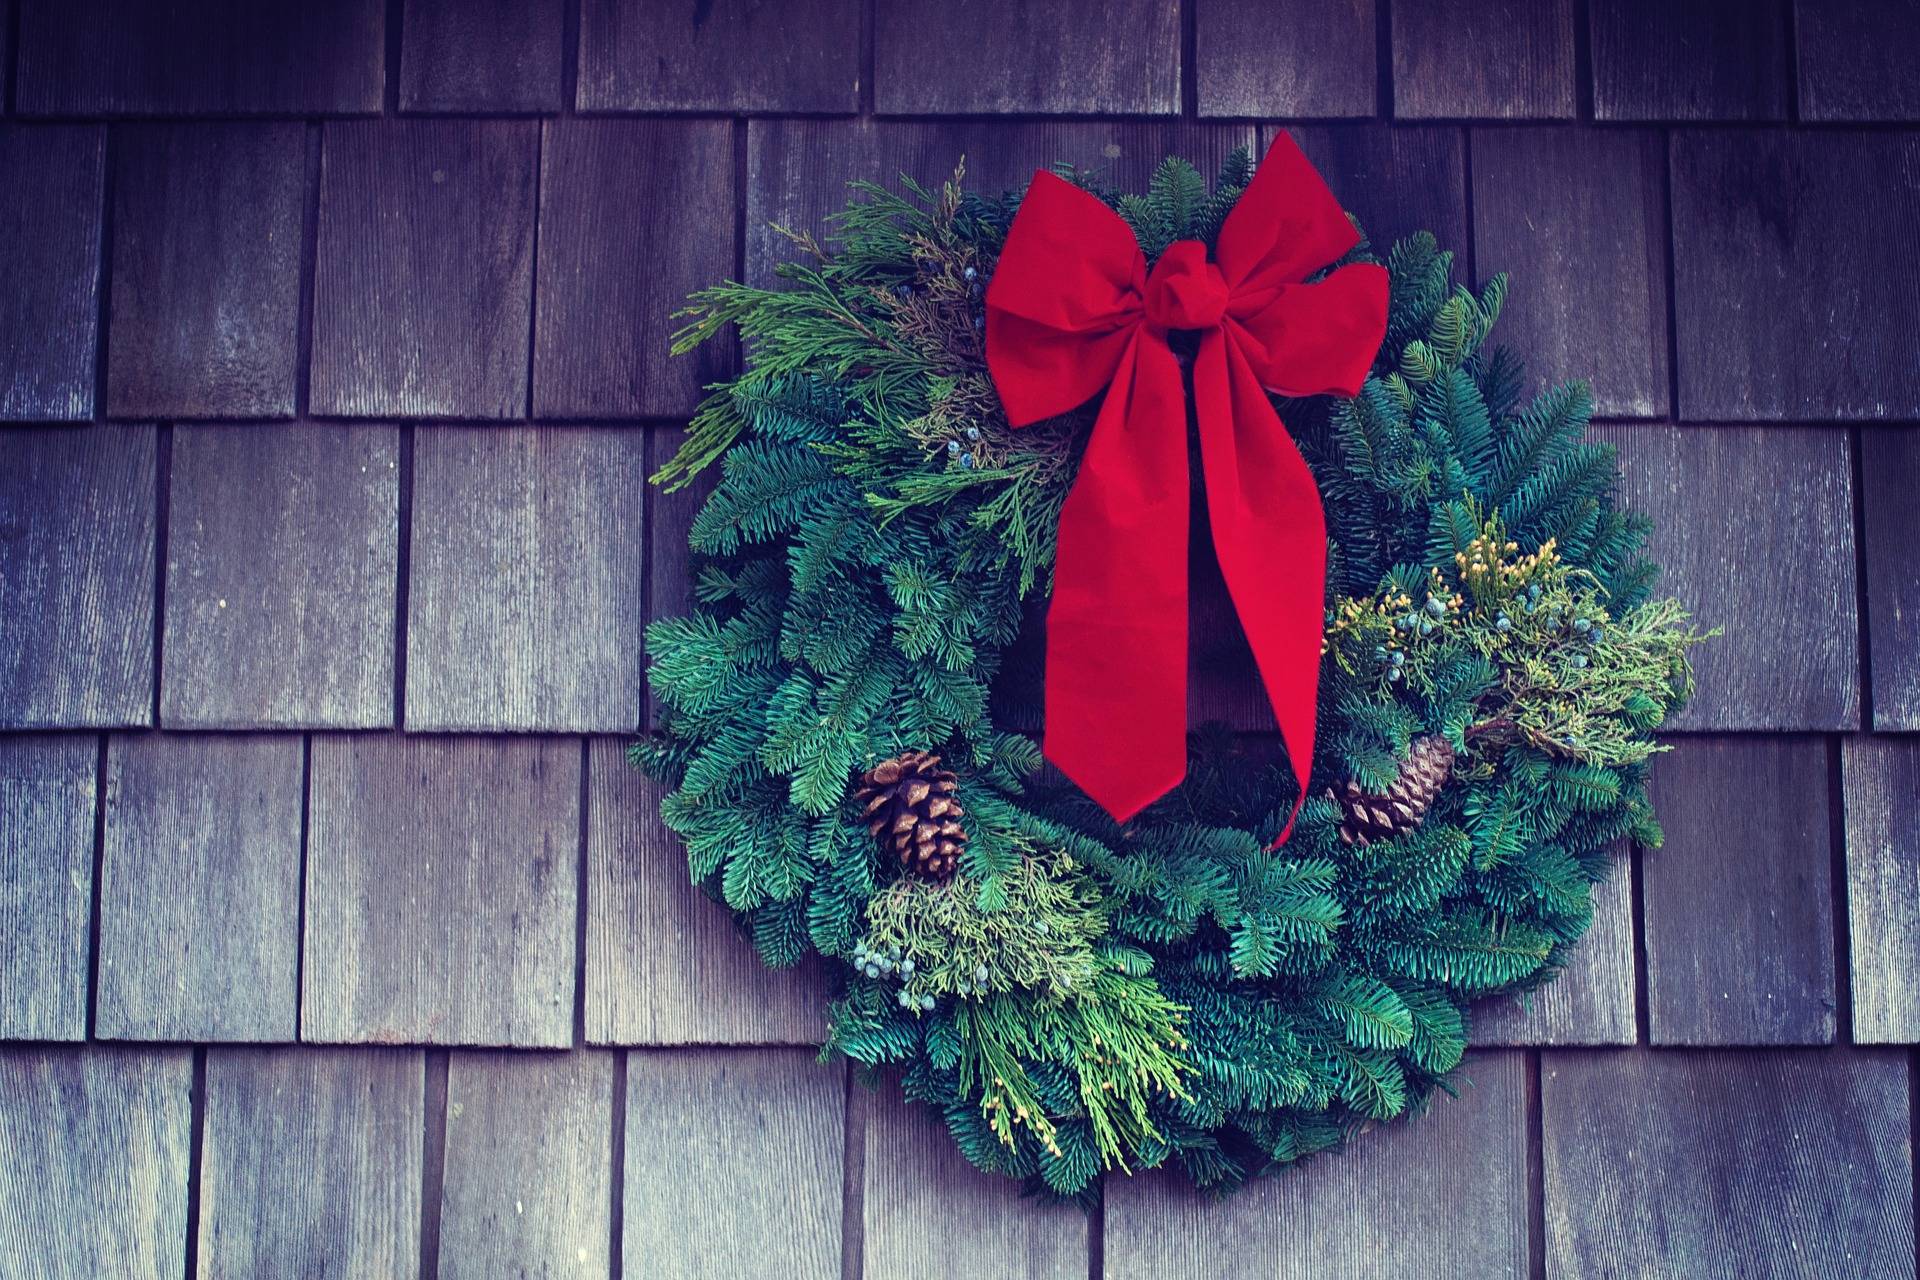 Wreath orders open Nov. 4